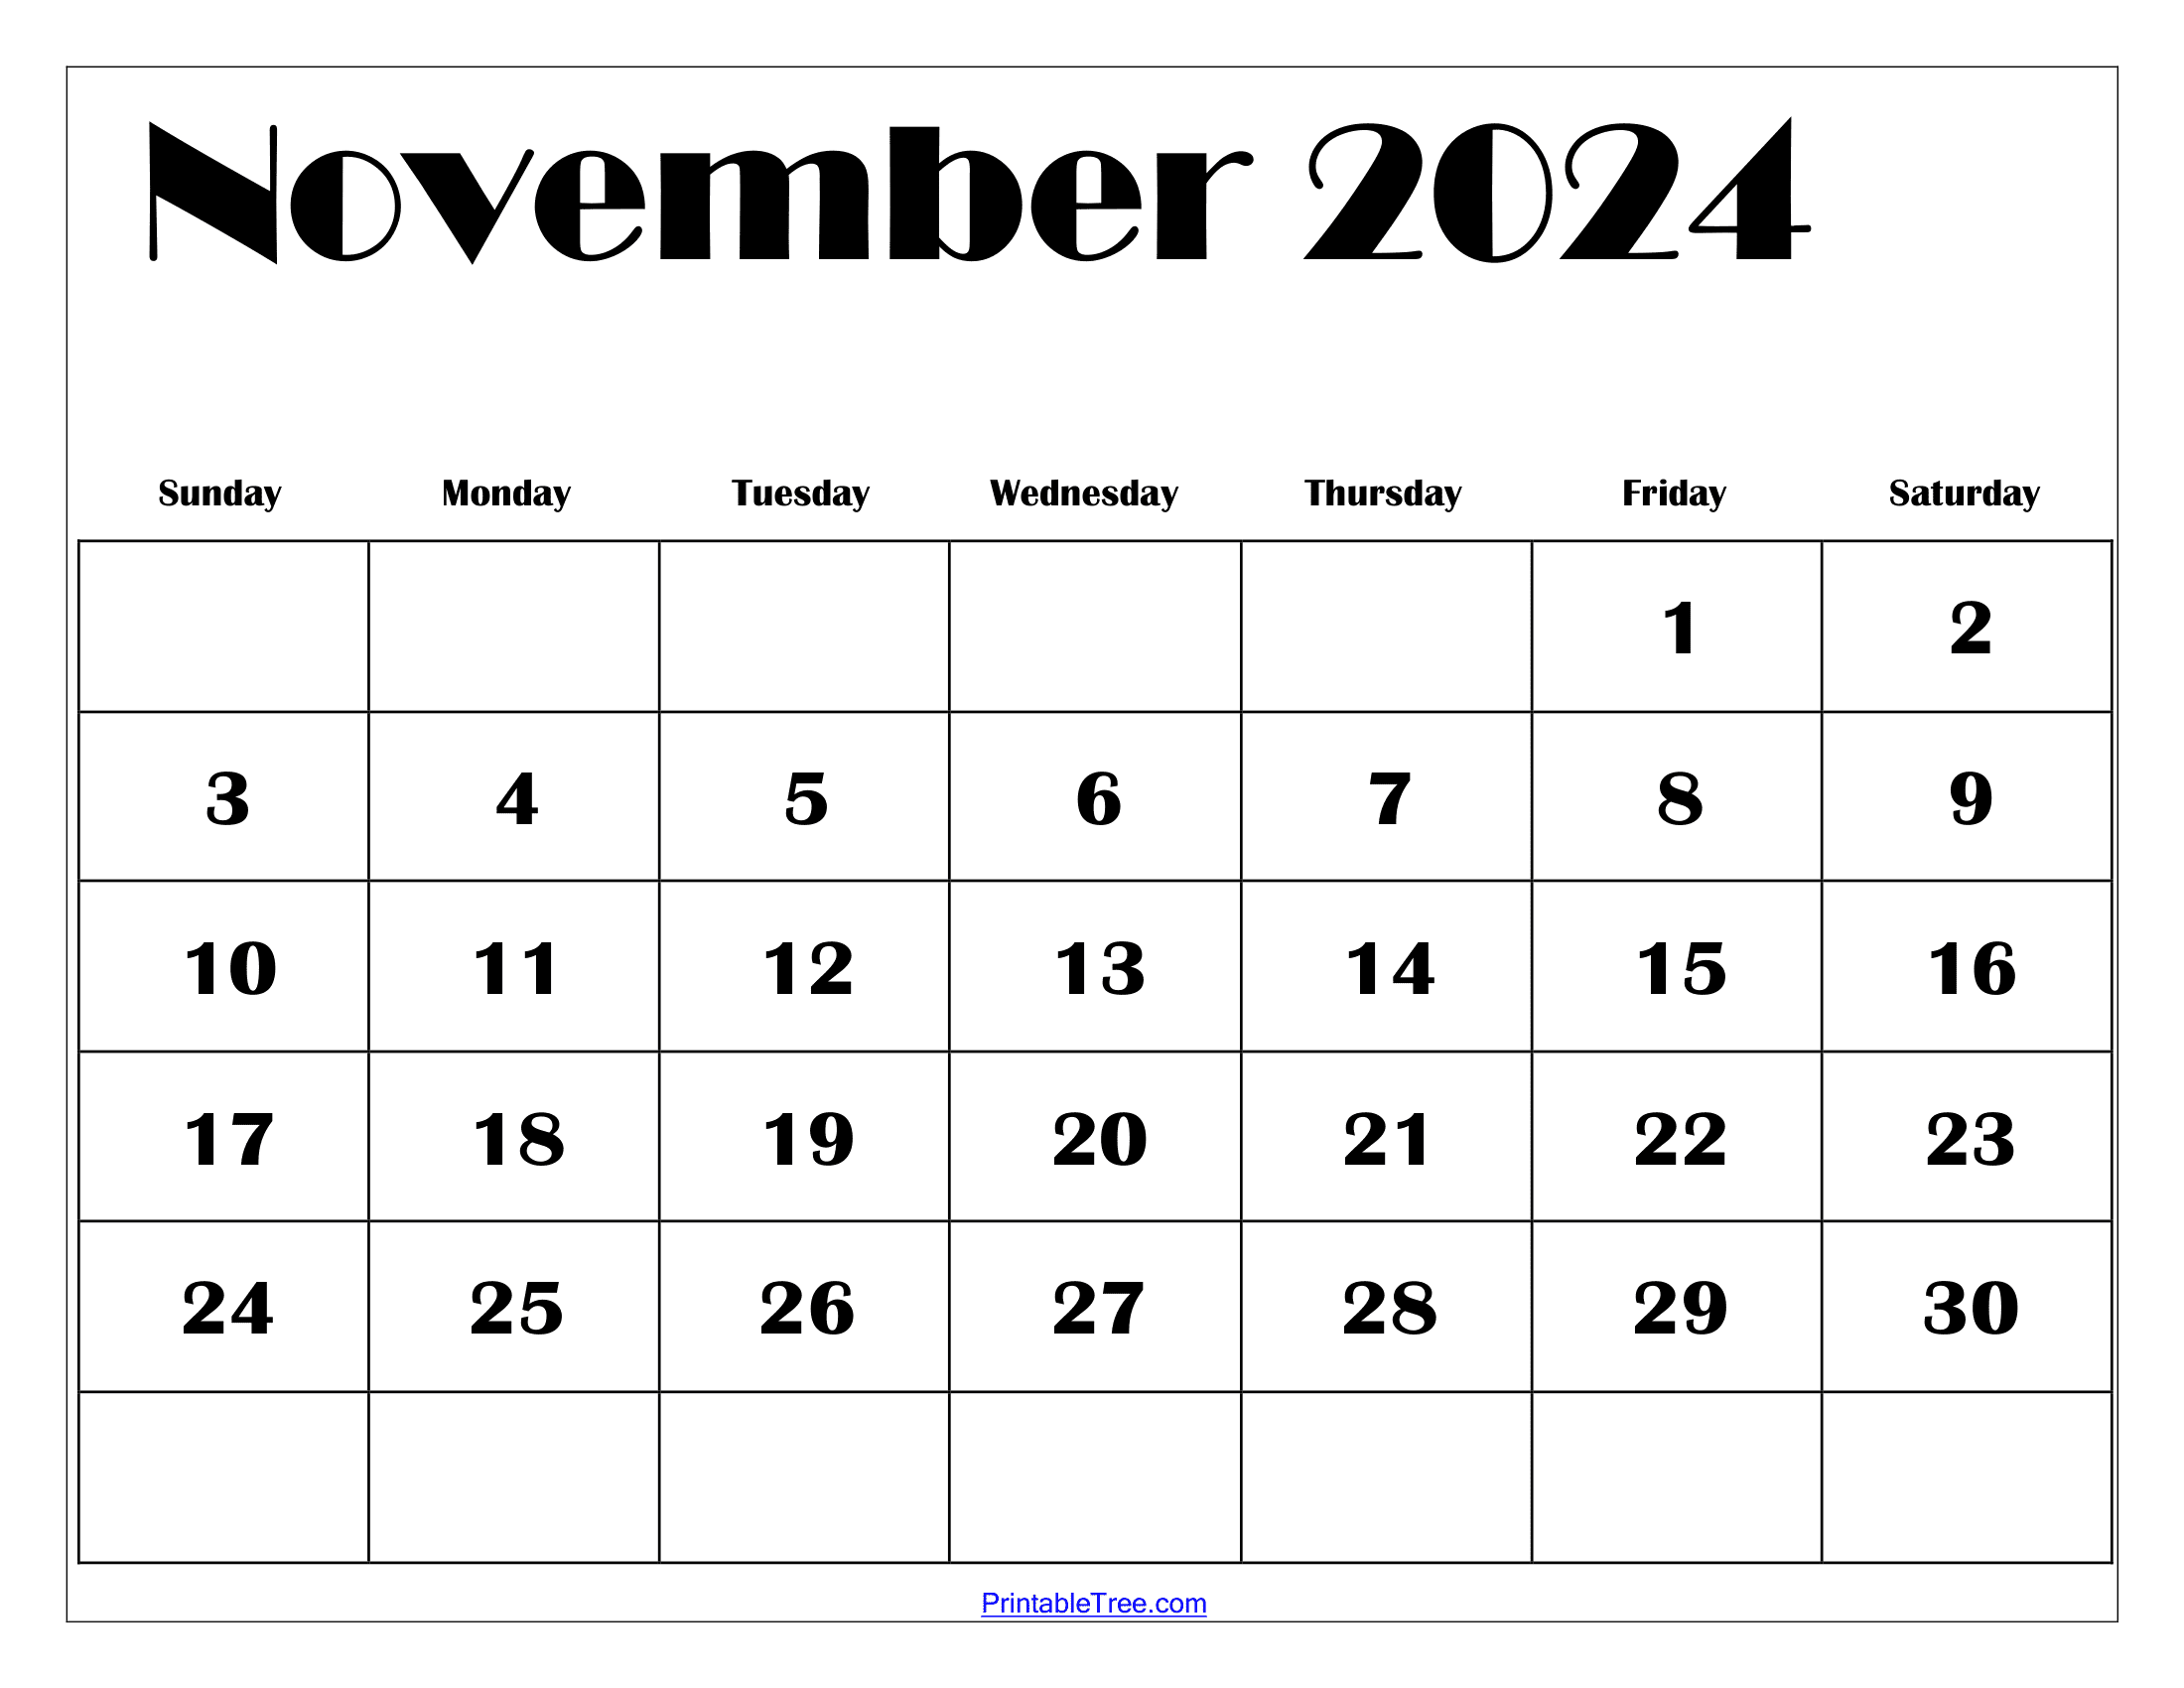 Printable November Calendar 2024 Avrit Carlene